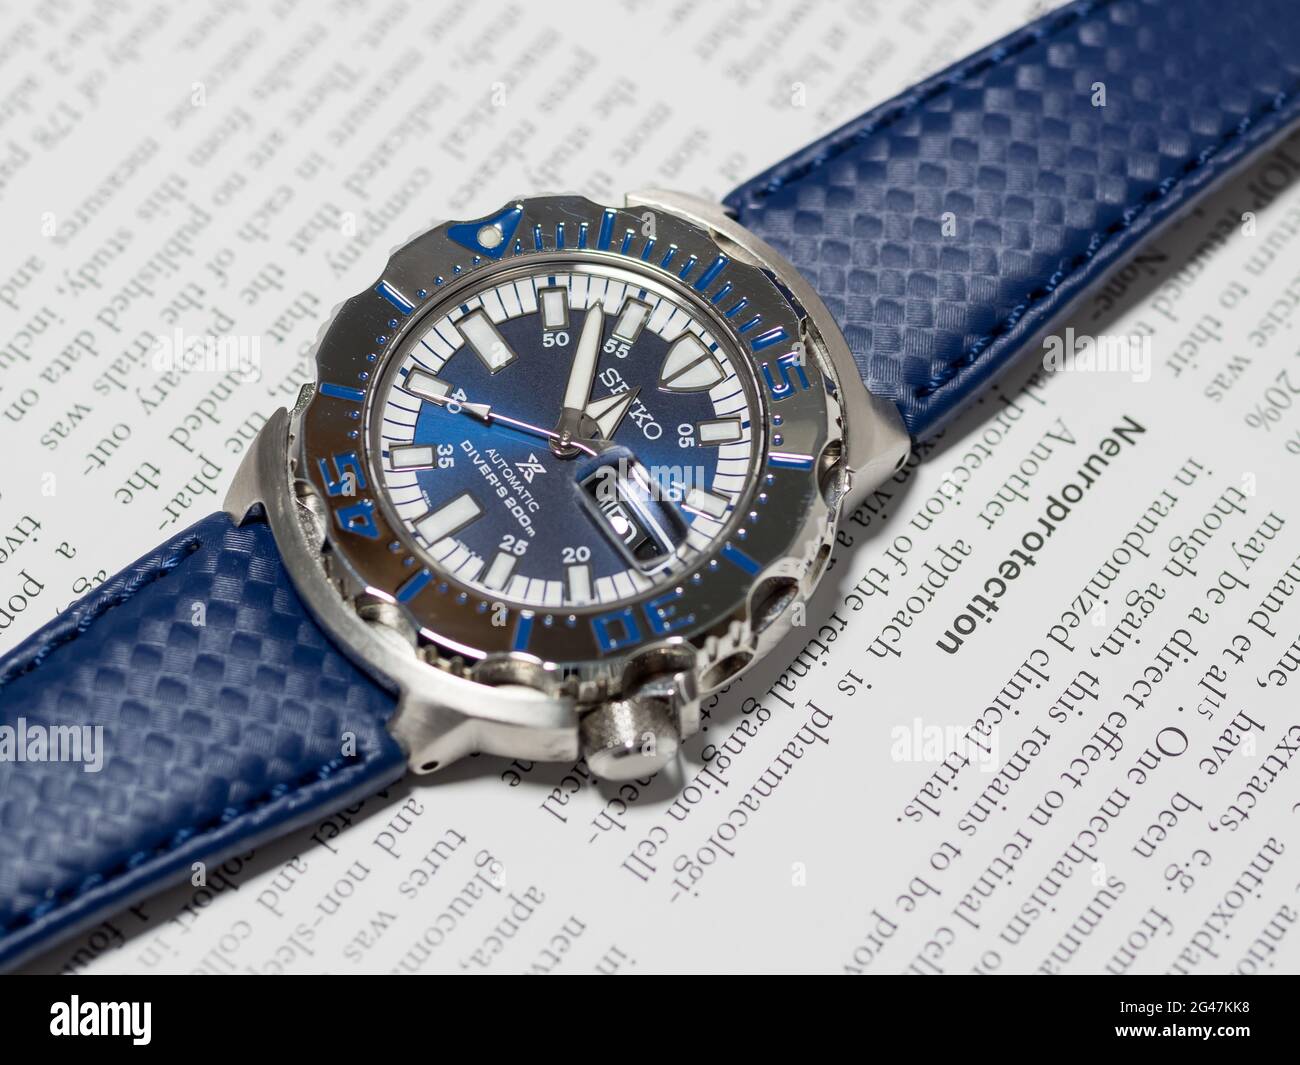 BANGKOK - AGOSTO 26: Seiko Royal Blue modello limitato è famoso Giappone subacqueo orologio con la rivista inglese sfondo carta selettiva fuoco sul suo quadrante, è stato Foto Stock